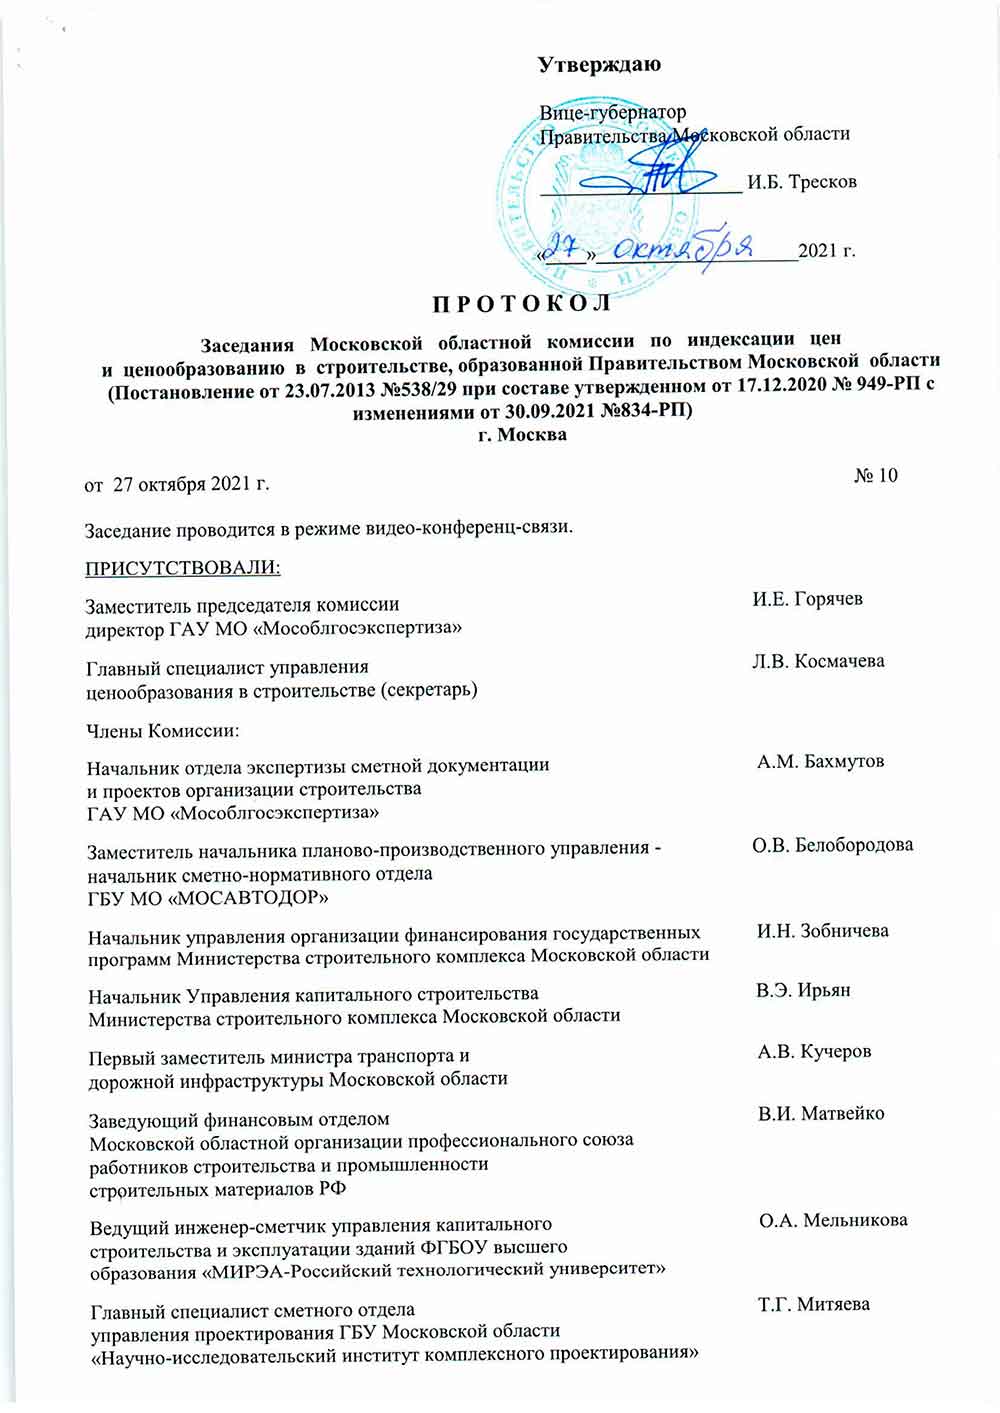 Протокол Мособлгосэкспертизы №10 от 27.10.2021 года